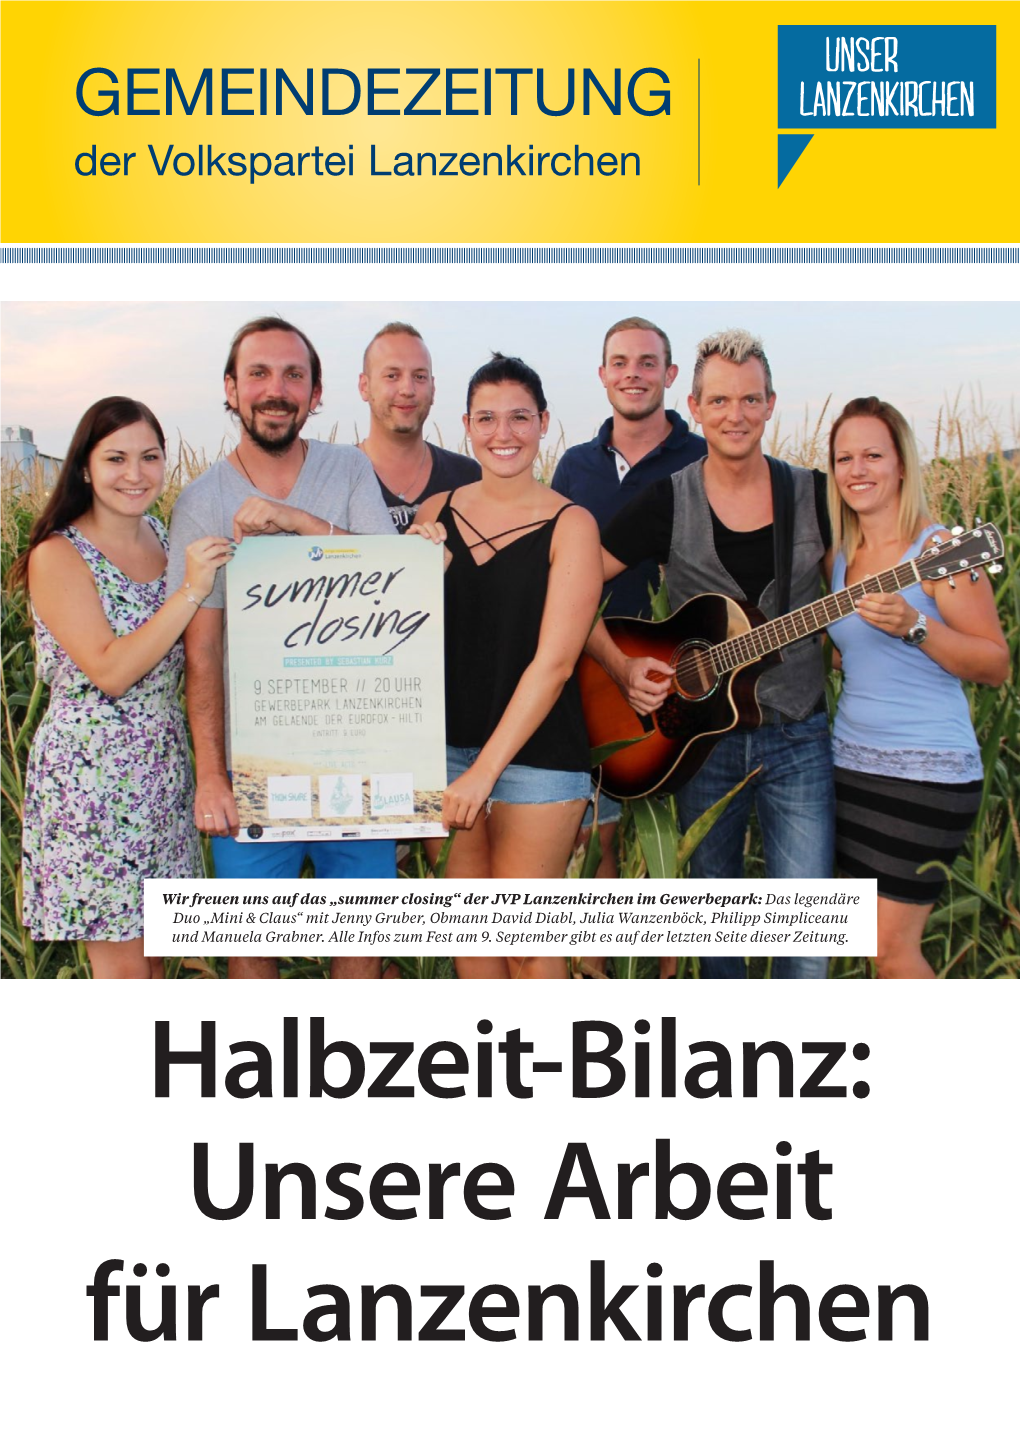 Unsere Arbeit Für Lanzenkirchen Gemeindezeitung 09 | 2017